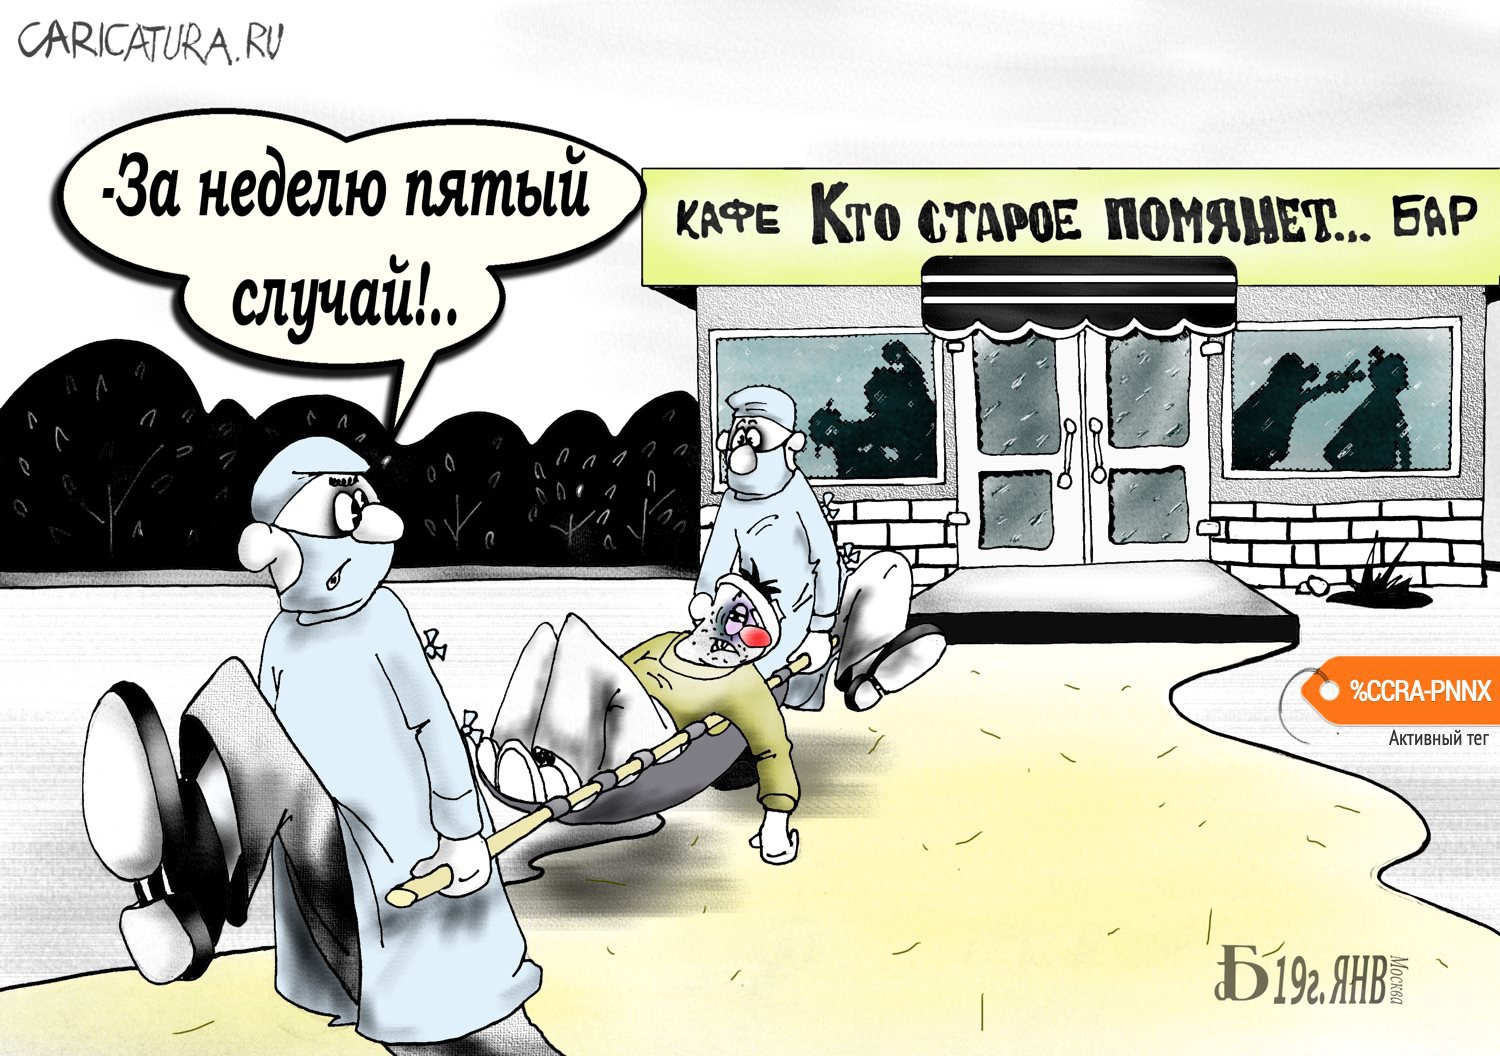 Карикатура "Про старое кафе", Борис Демин